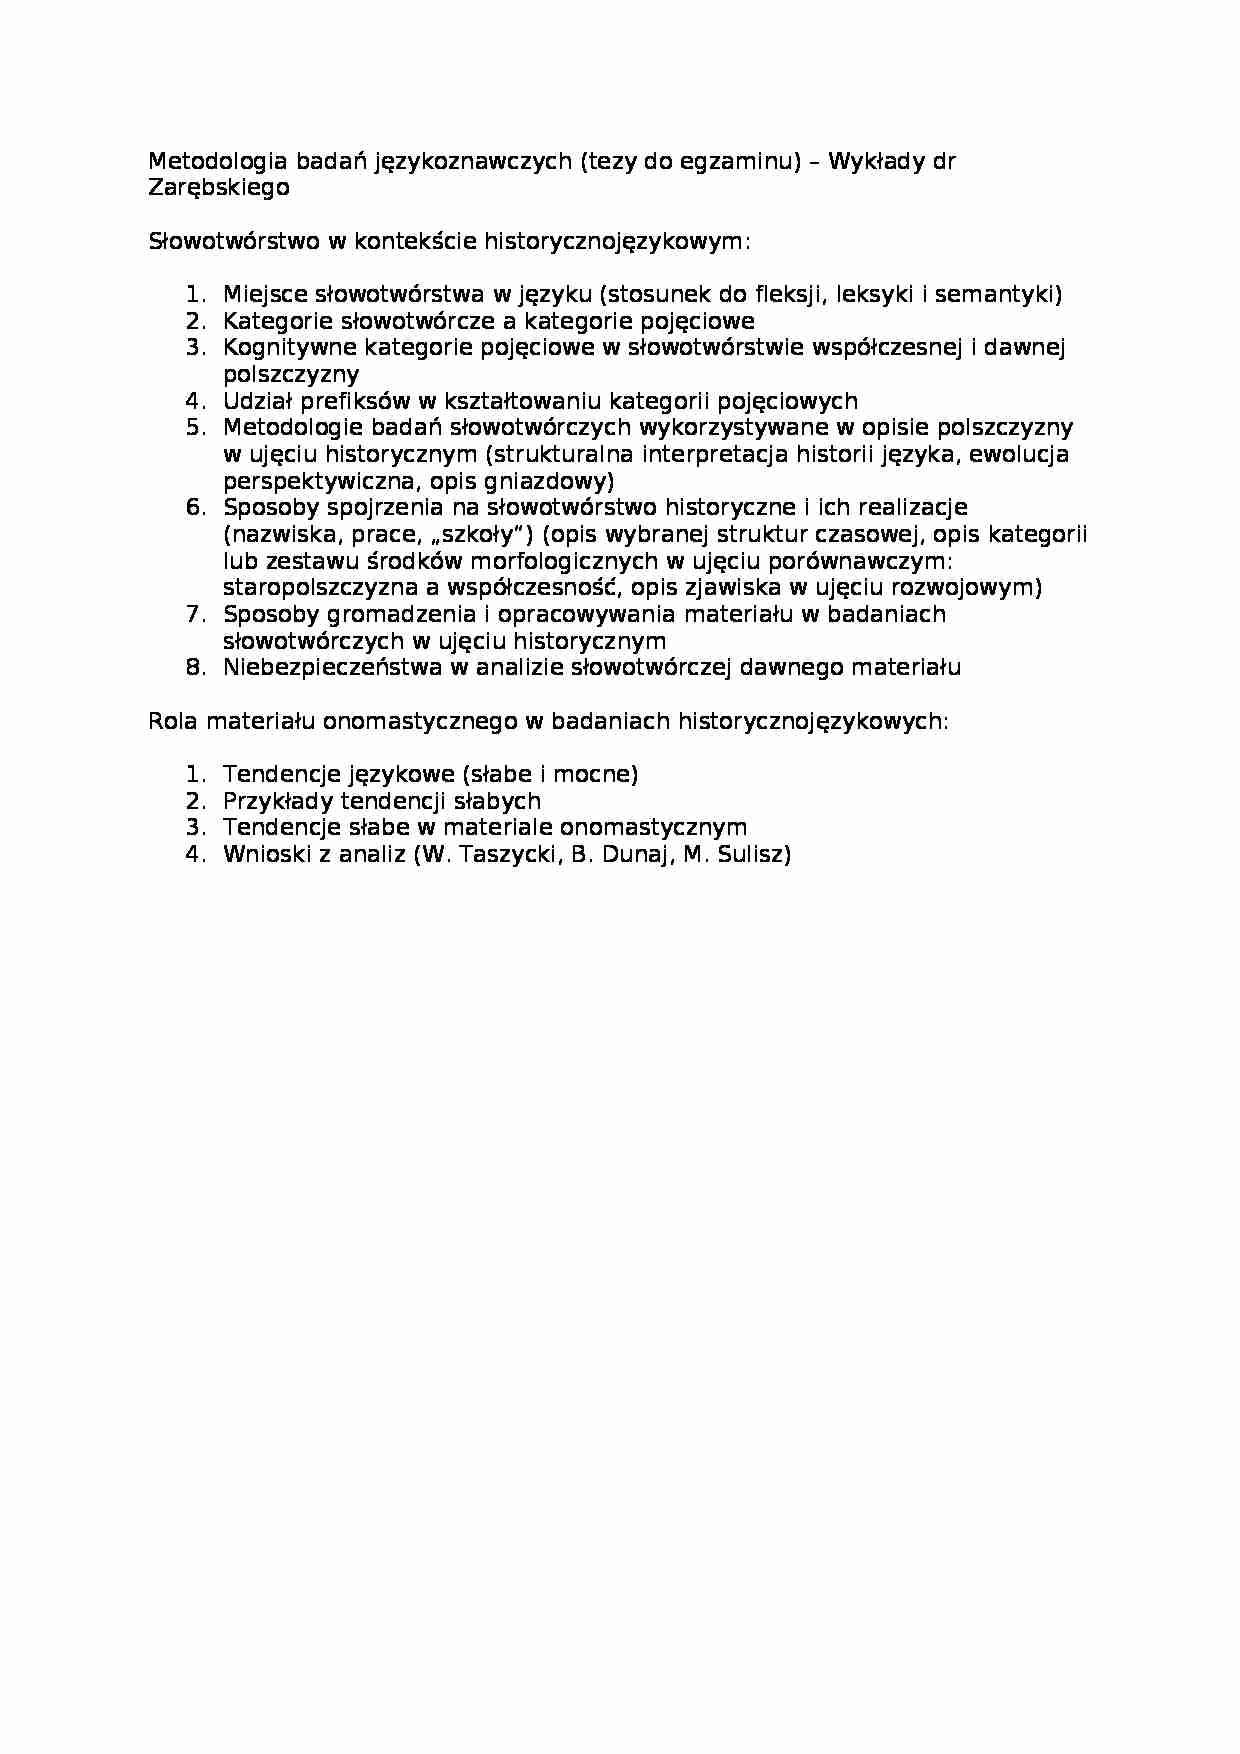 Metodologia badań językoznawczych -zagadnienia do egzaminu - strona 1